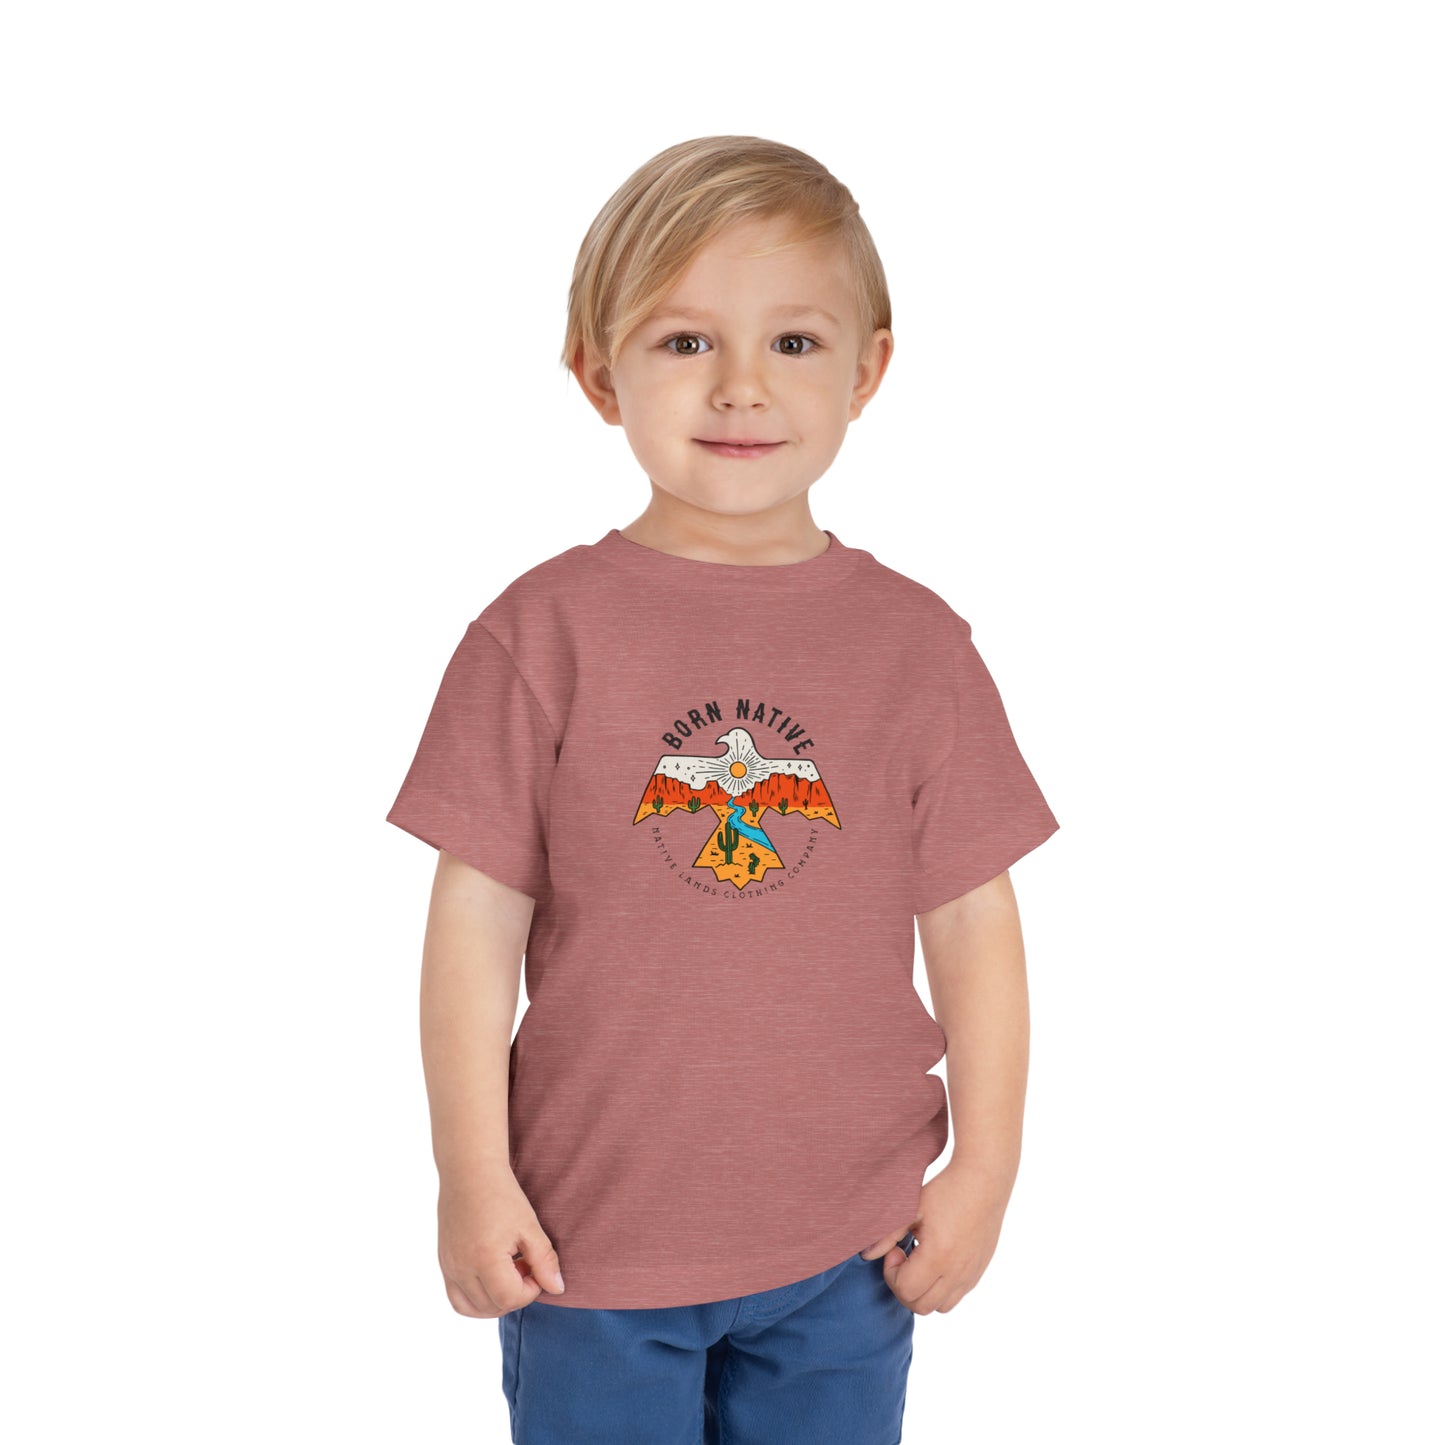 Camicia nativa nata in cotone per bambini nativi americani